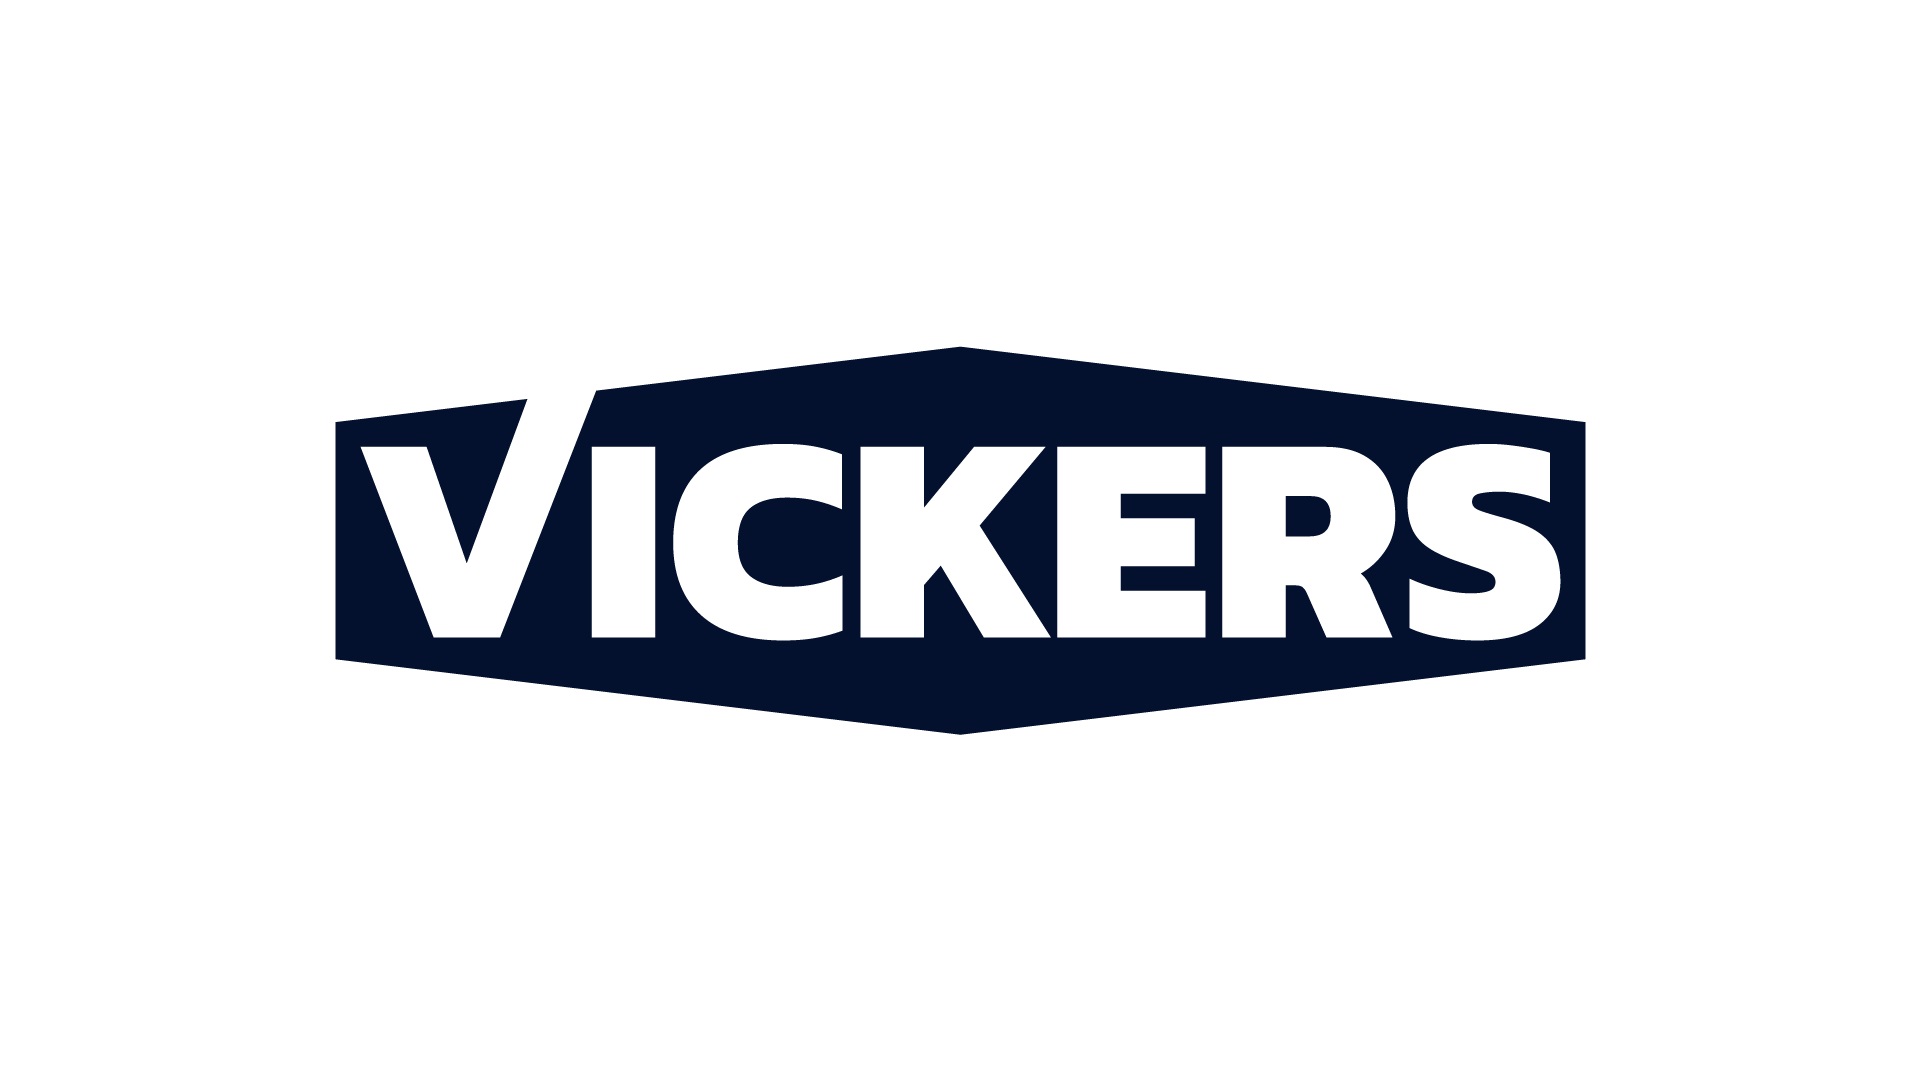  Vickers sealants